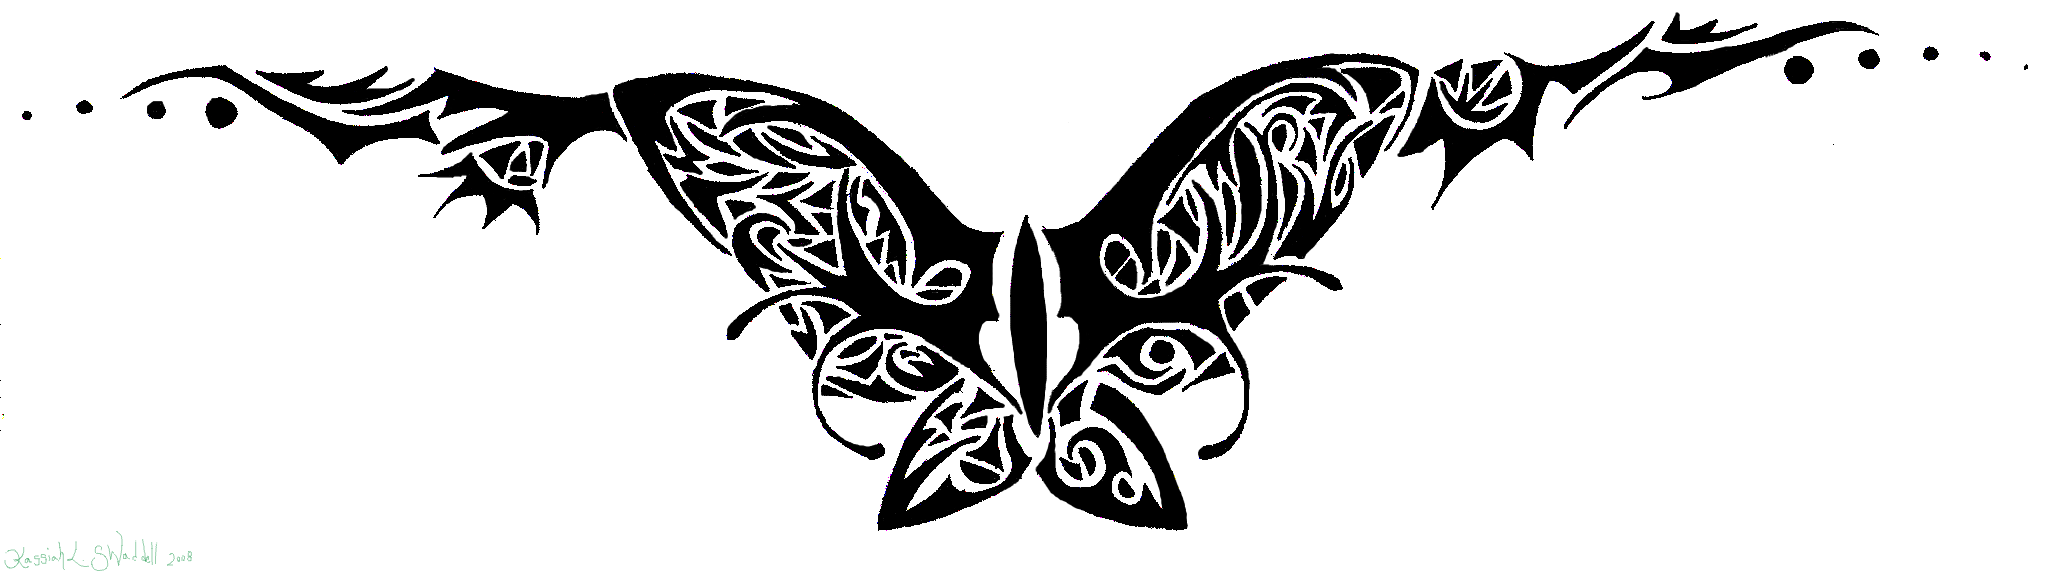 Fancy Butterfly Tramp Stamp Tattoo By Ryvienna On Deviantart, Tramp Stamp.....